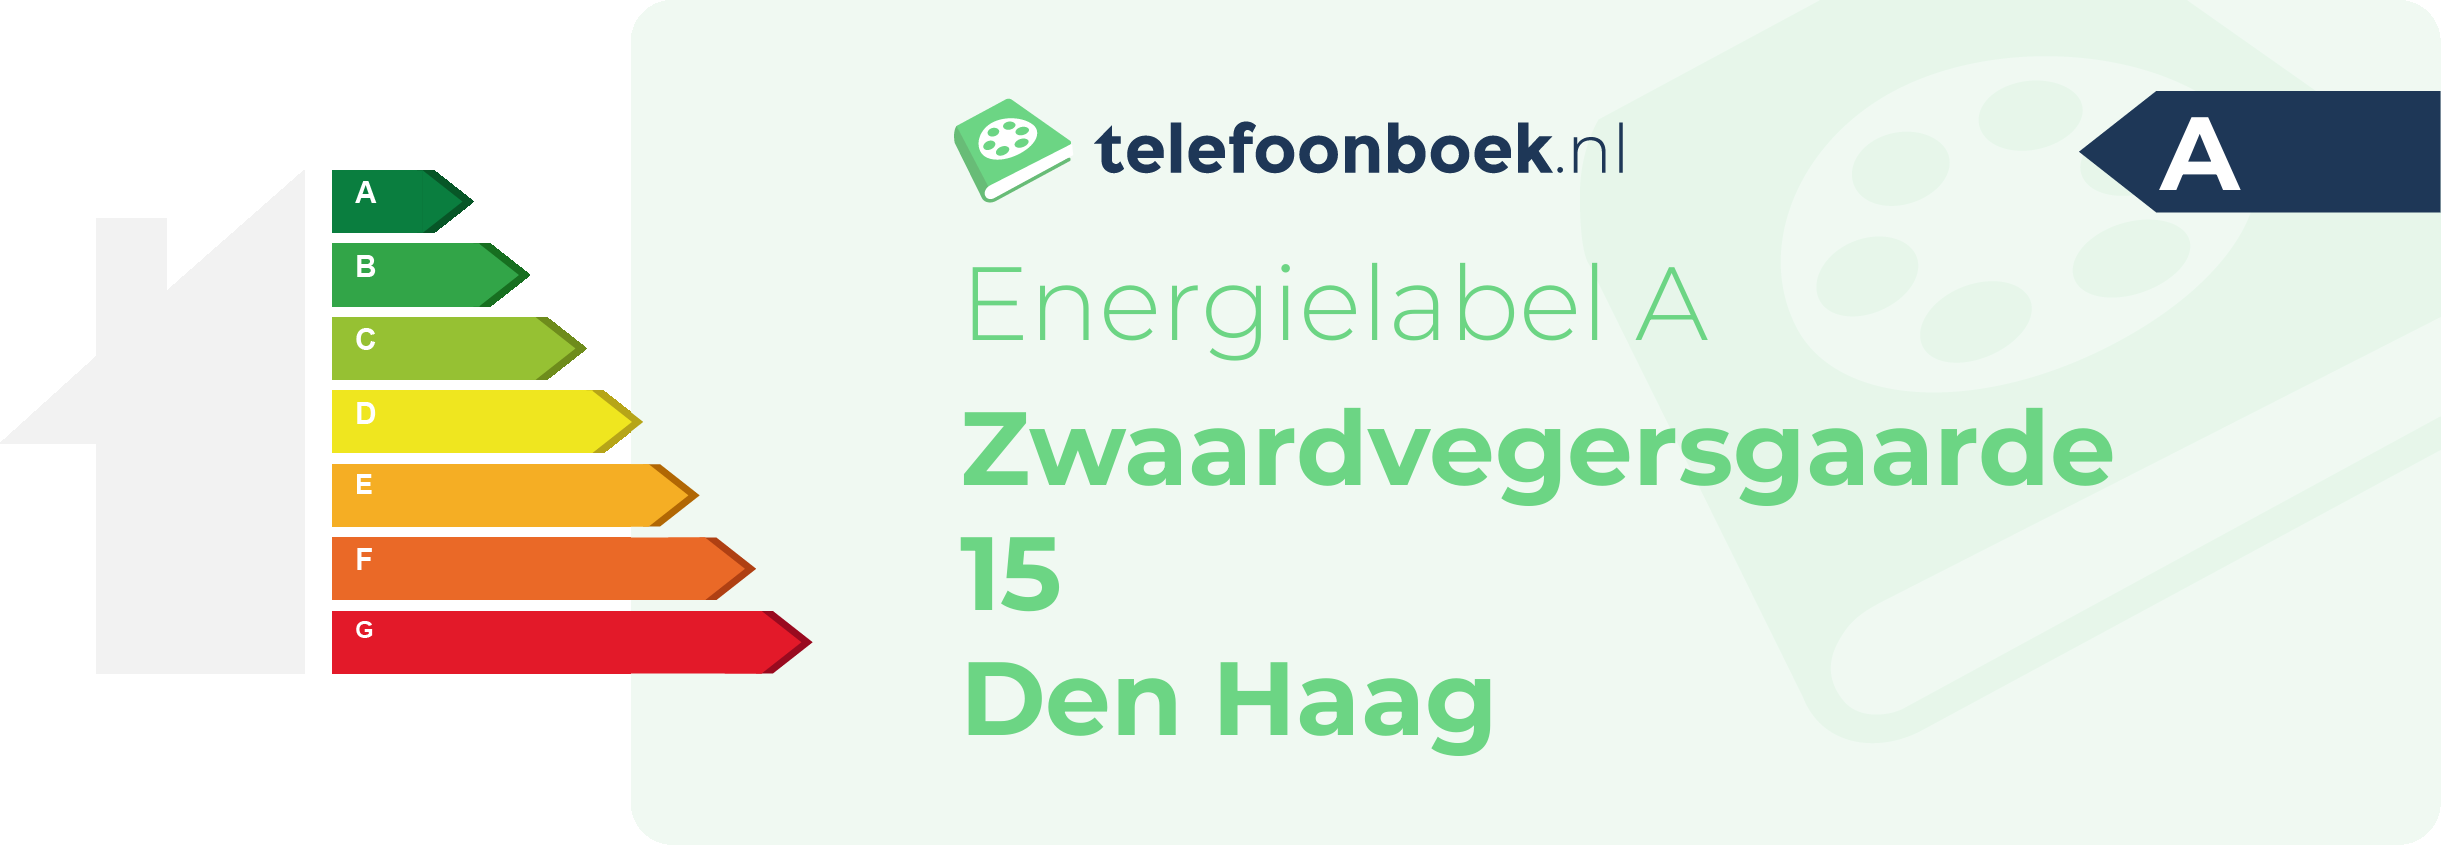 Energielabel Zwaardvegersgaarde 15 Den Haag